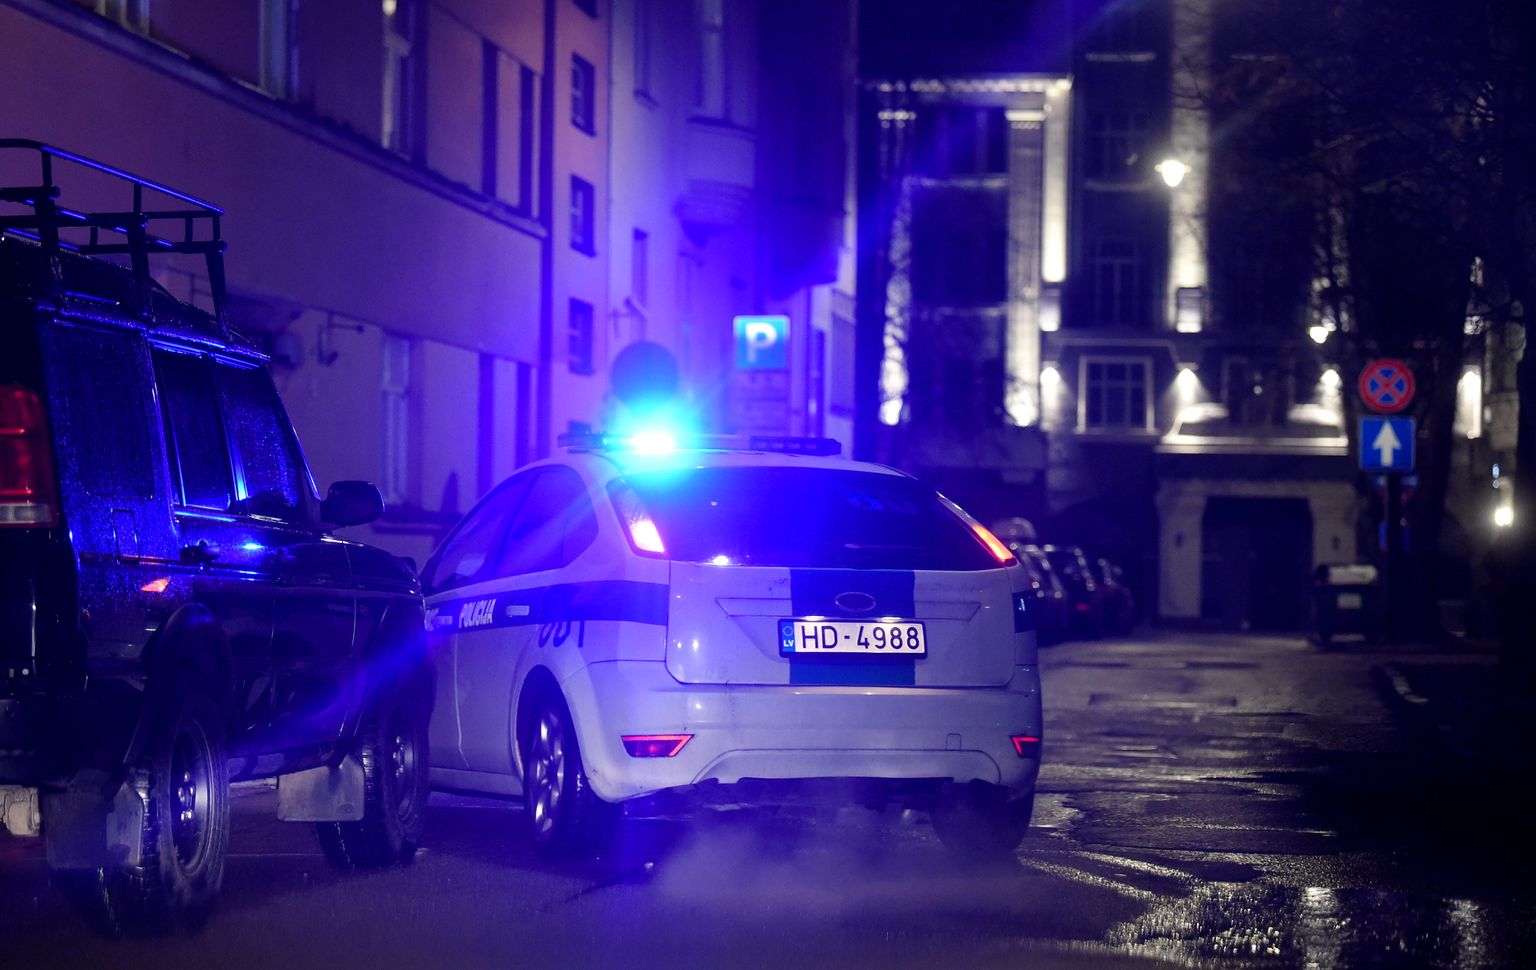 Rīgas pašvaldības policija reida laikā kontrolē, kā tiek ievēroti jaunie komandantstundas ierobežojumi, kad valstī izsludināta ārkārtējā situācija Covid-19 pandēmijas laikā.